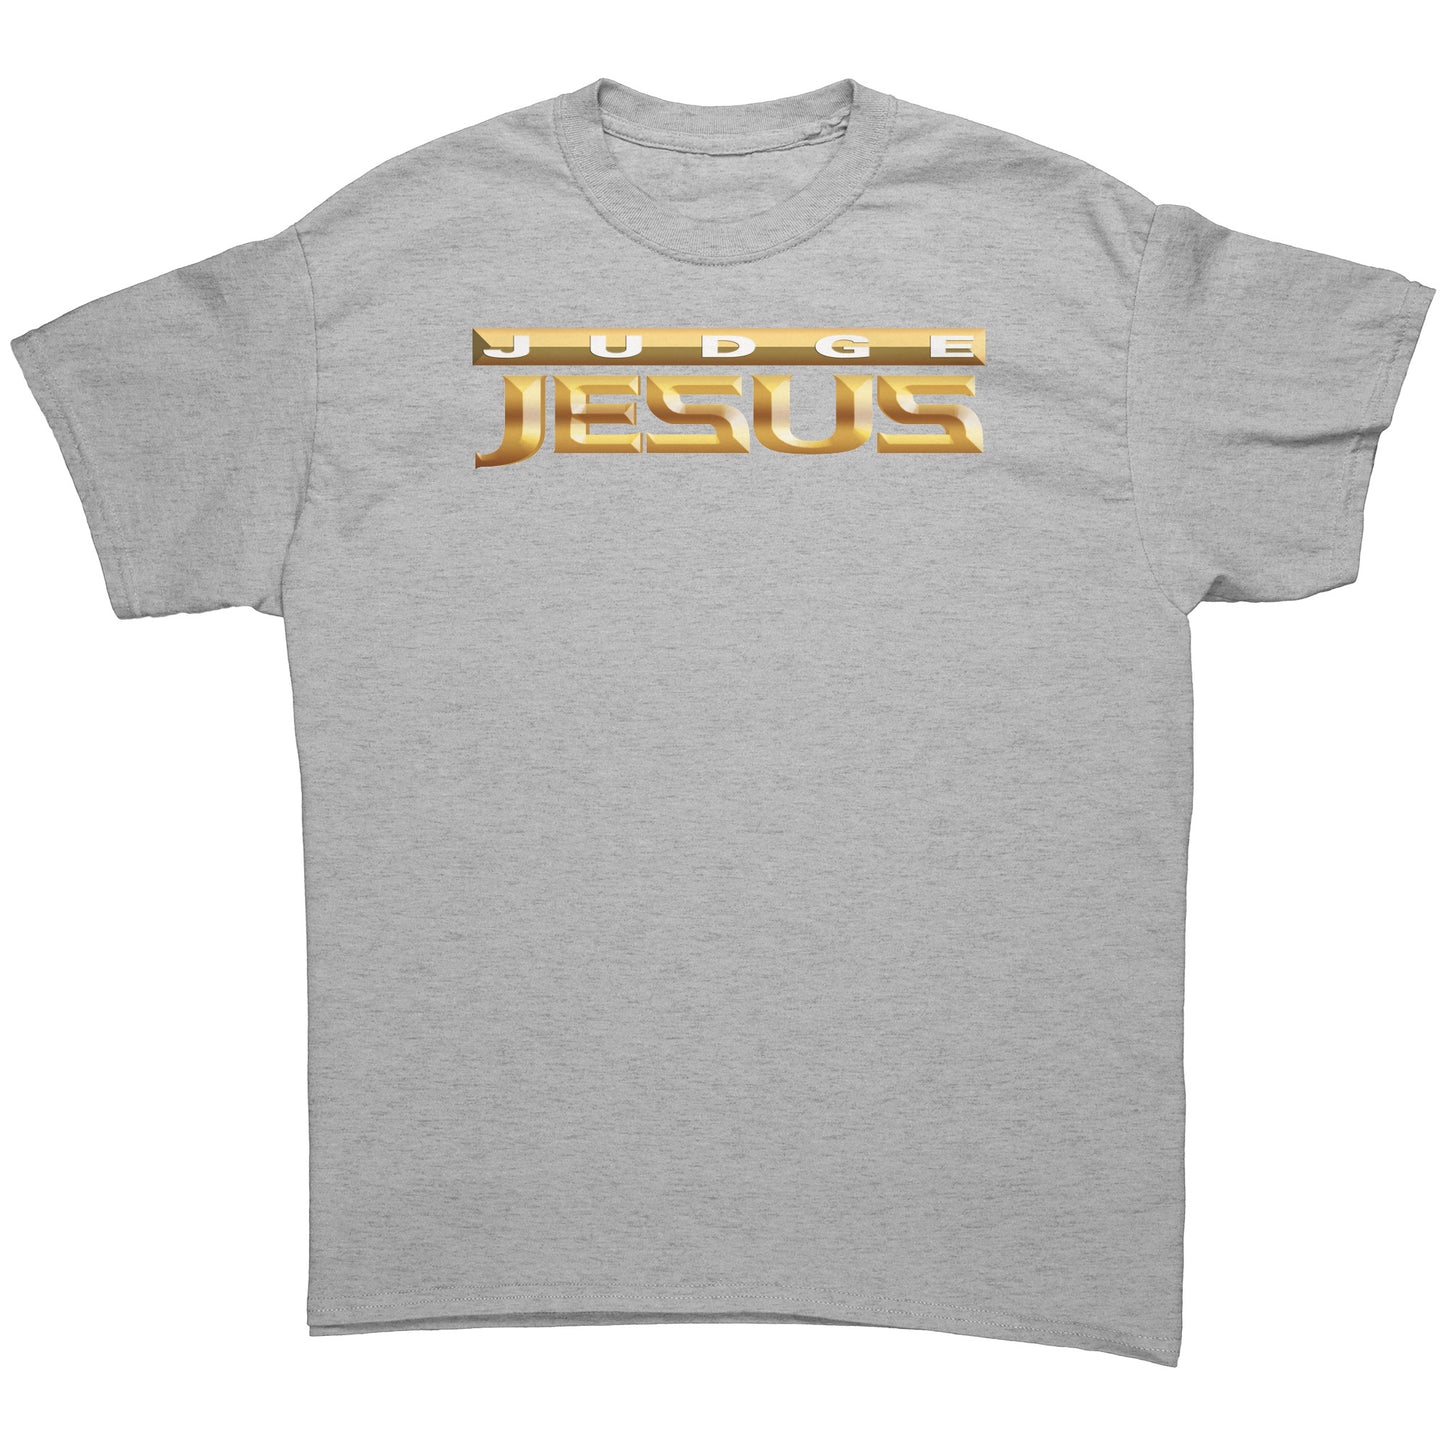 Judge Jesus Men's T-Shirt